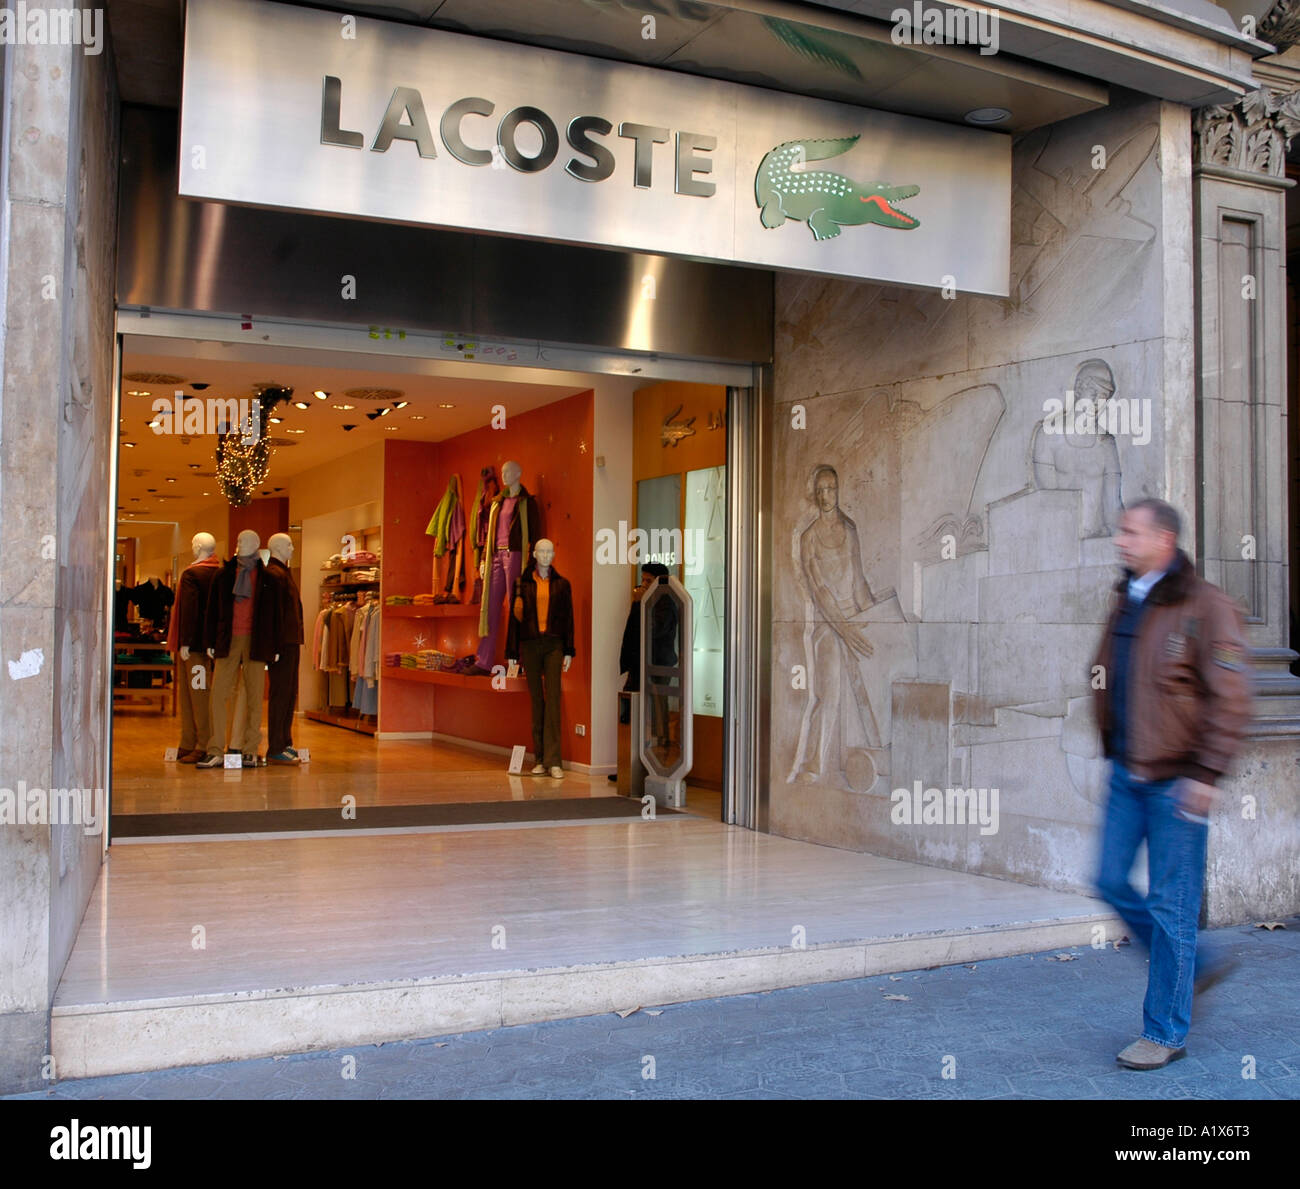 Lacoste shop hi-res stock images - Alamy